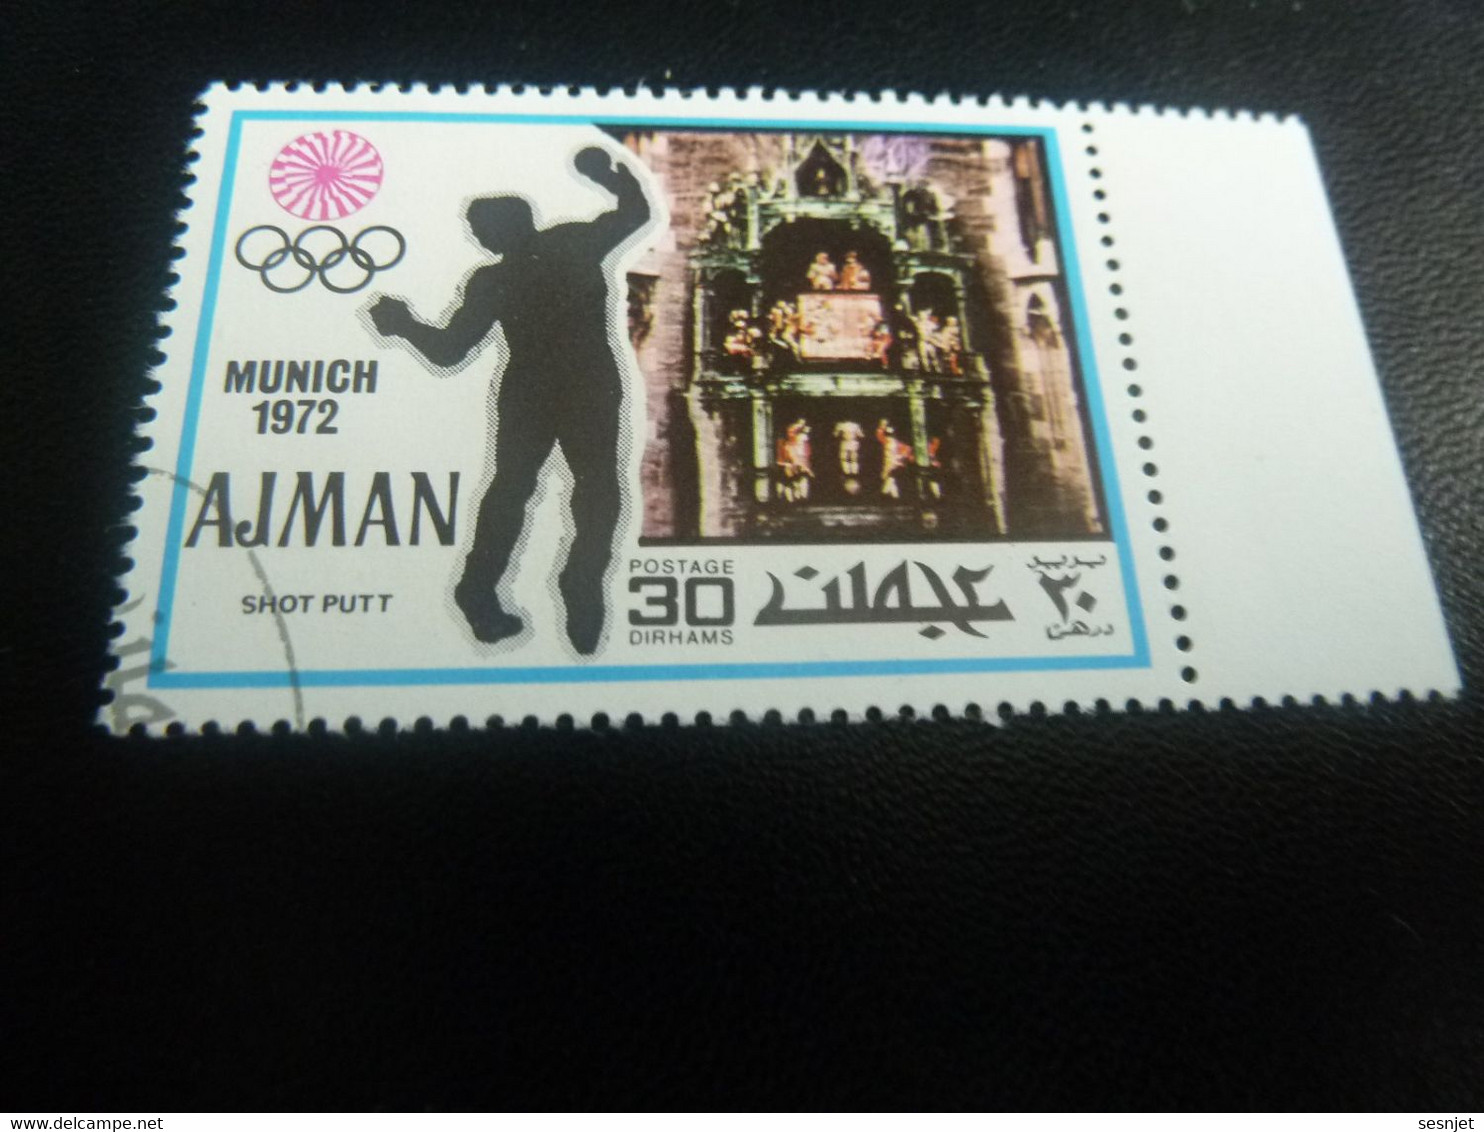 Ajman - Munich - Shot Putt - 30 Dirhams - Postage - Multicolore - Oblitéré - Année 1972 - - Hand-Ball